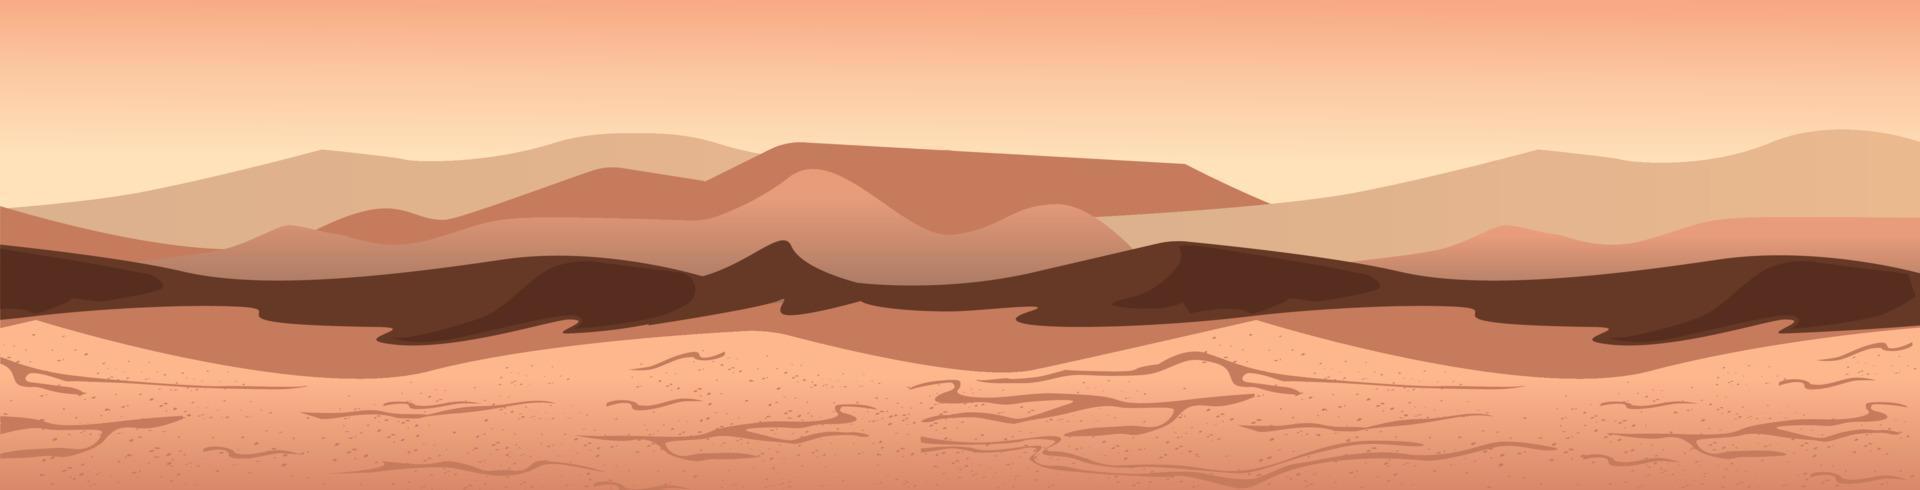 sabbioso paesaggio di Marte. futuristico giallo marziano deserto grigio arancia sabbia dune con roccia interplanetario viaggio colonizzazione inabitabile superficie con obbligatorio vettore terrorismo in profondità suolo crateri.